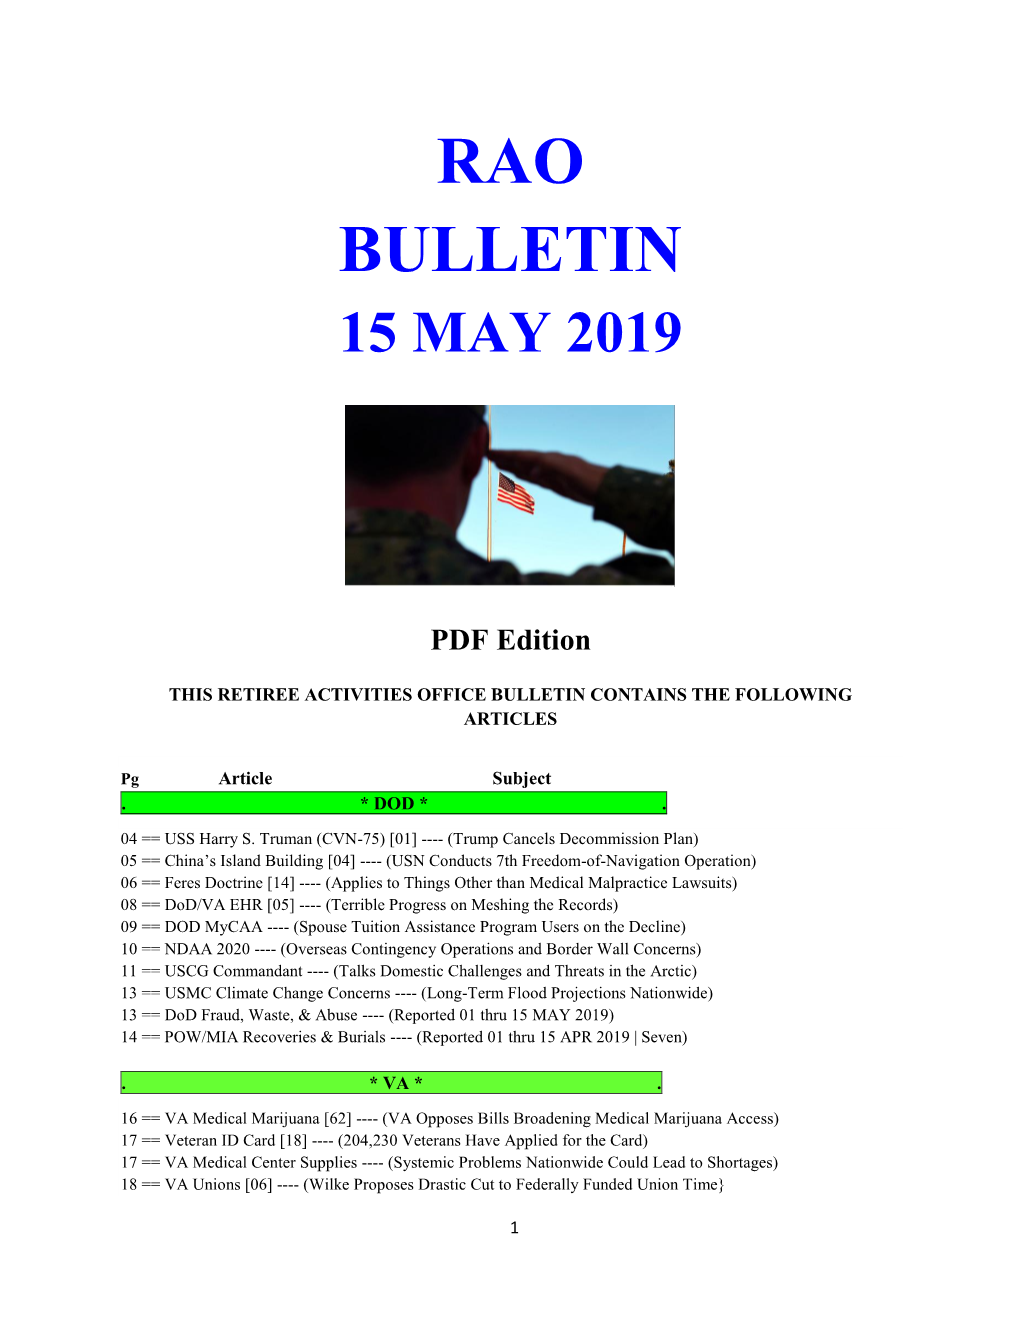 Bulletin 190515 (PDF Edition)